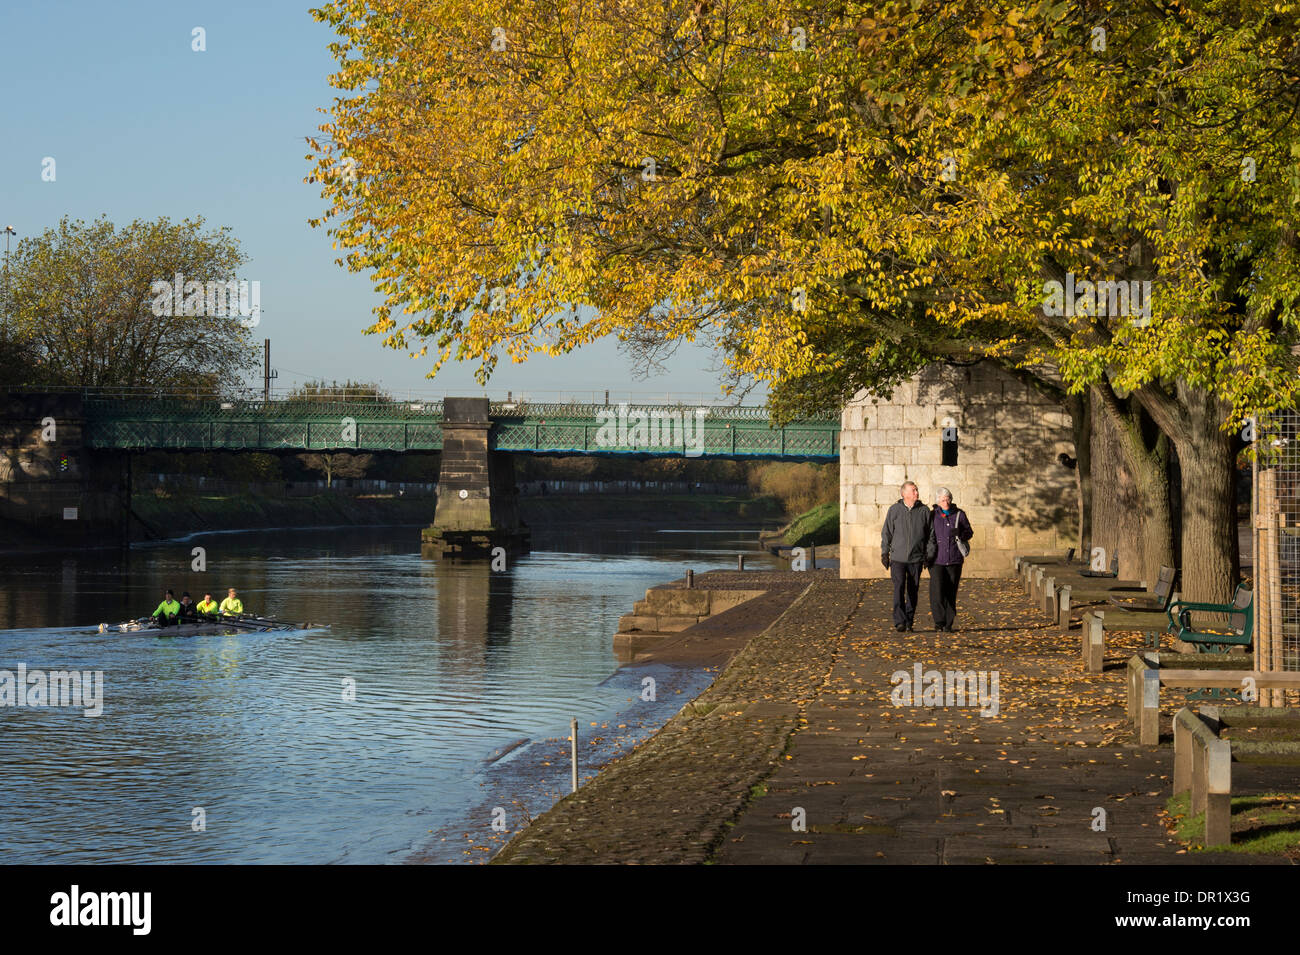 Ruderern im Boot & Paar-ruhigen, landschaftlich reizvollen, sonnigen, von Bäumen gesäumten Riverside Wanderweg im Herbst - Fluss Ouse, Dame Judi Dench, York, England, Großbritannien Stockfoto